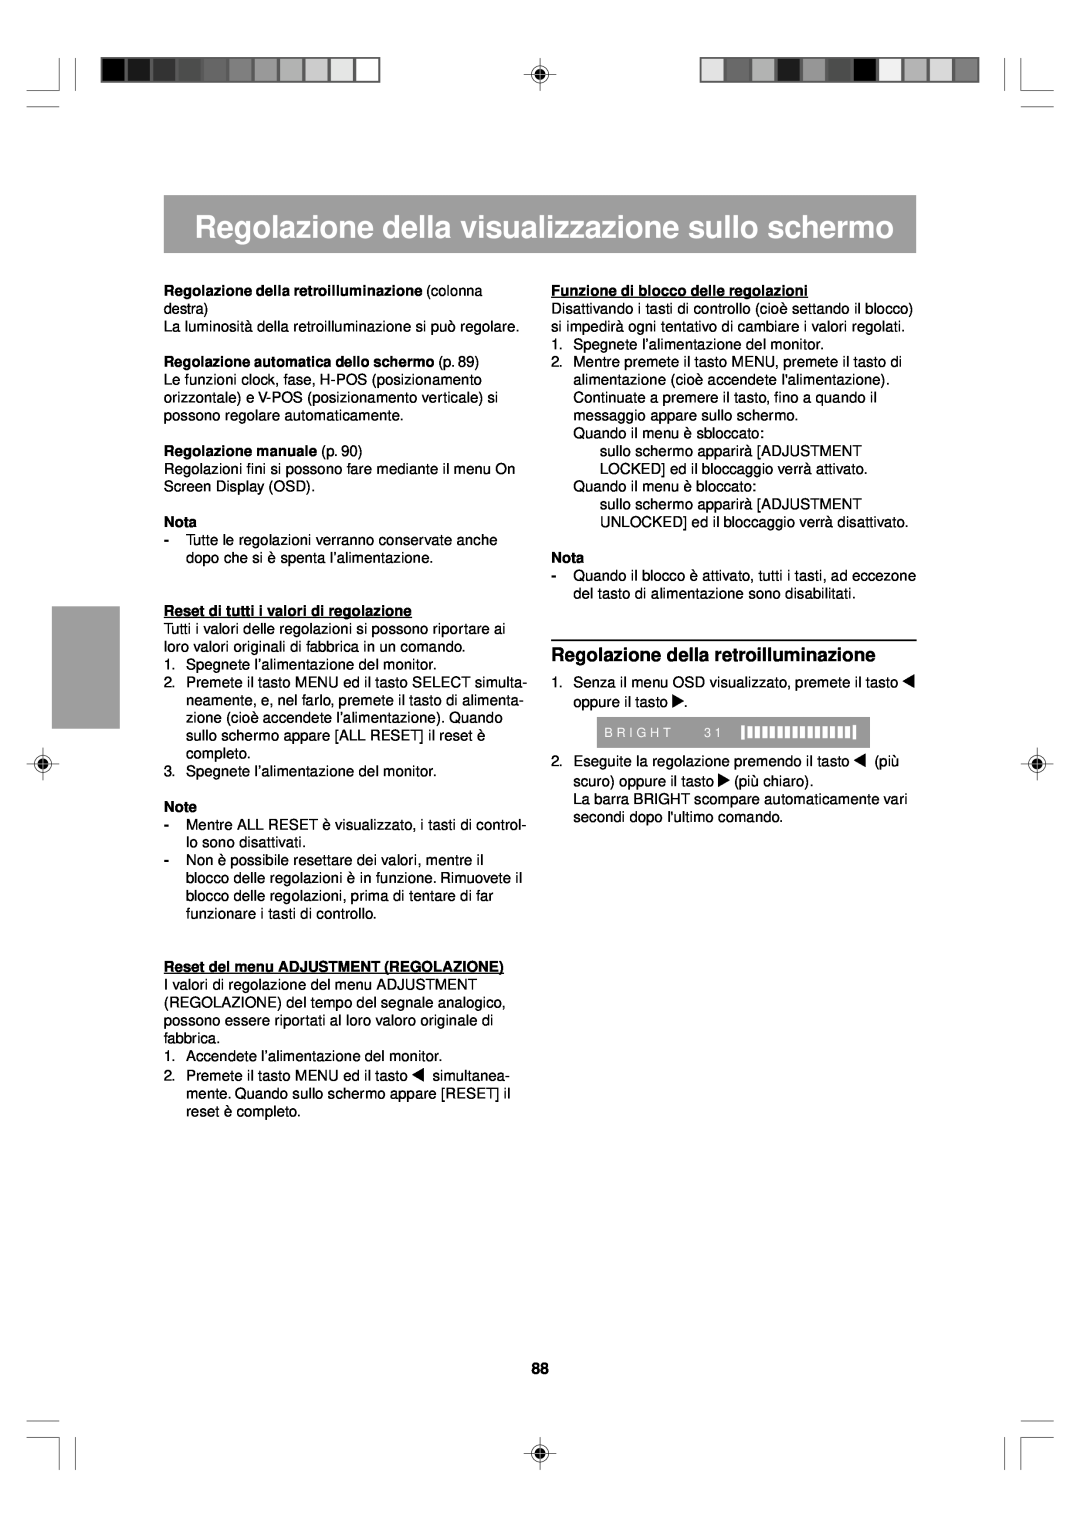 Sharp LL-T15V1 operation manual Regolazione della visualizzazione sullo schermo, Regolazione della retroilluminazione, Nota 